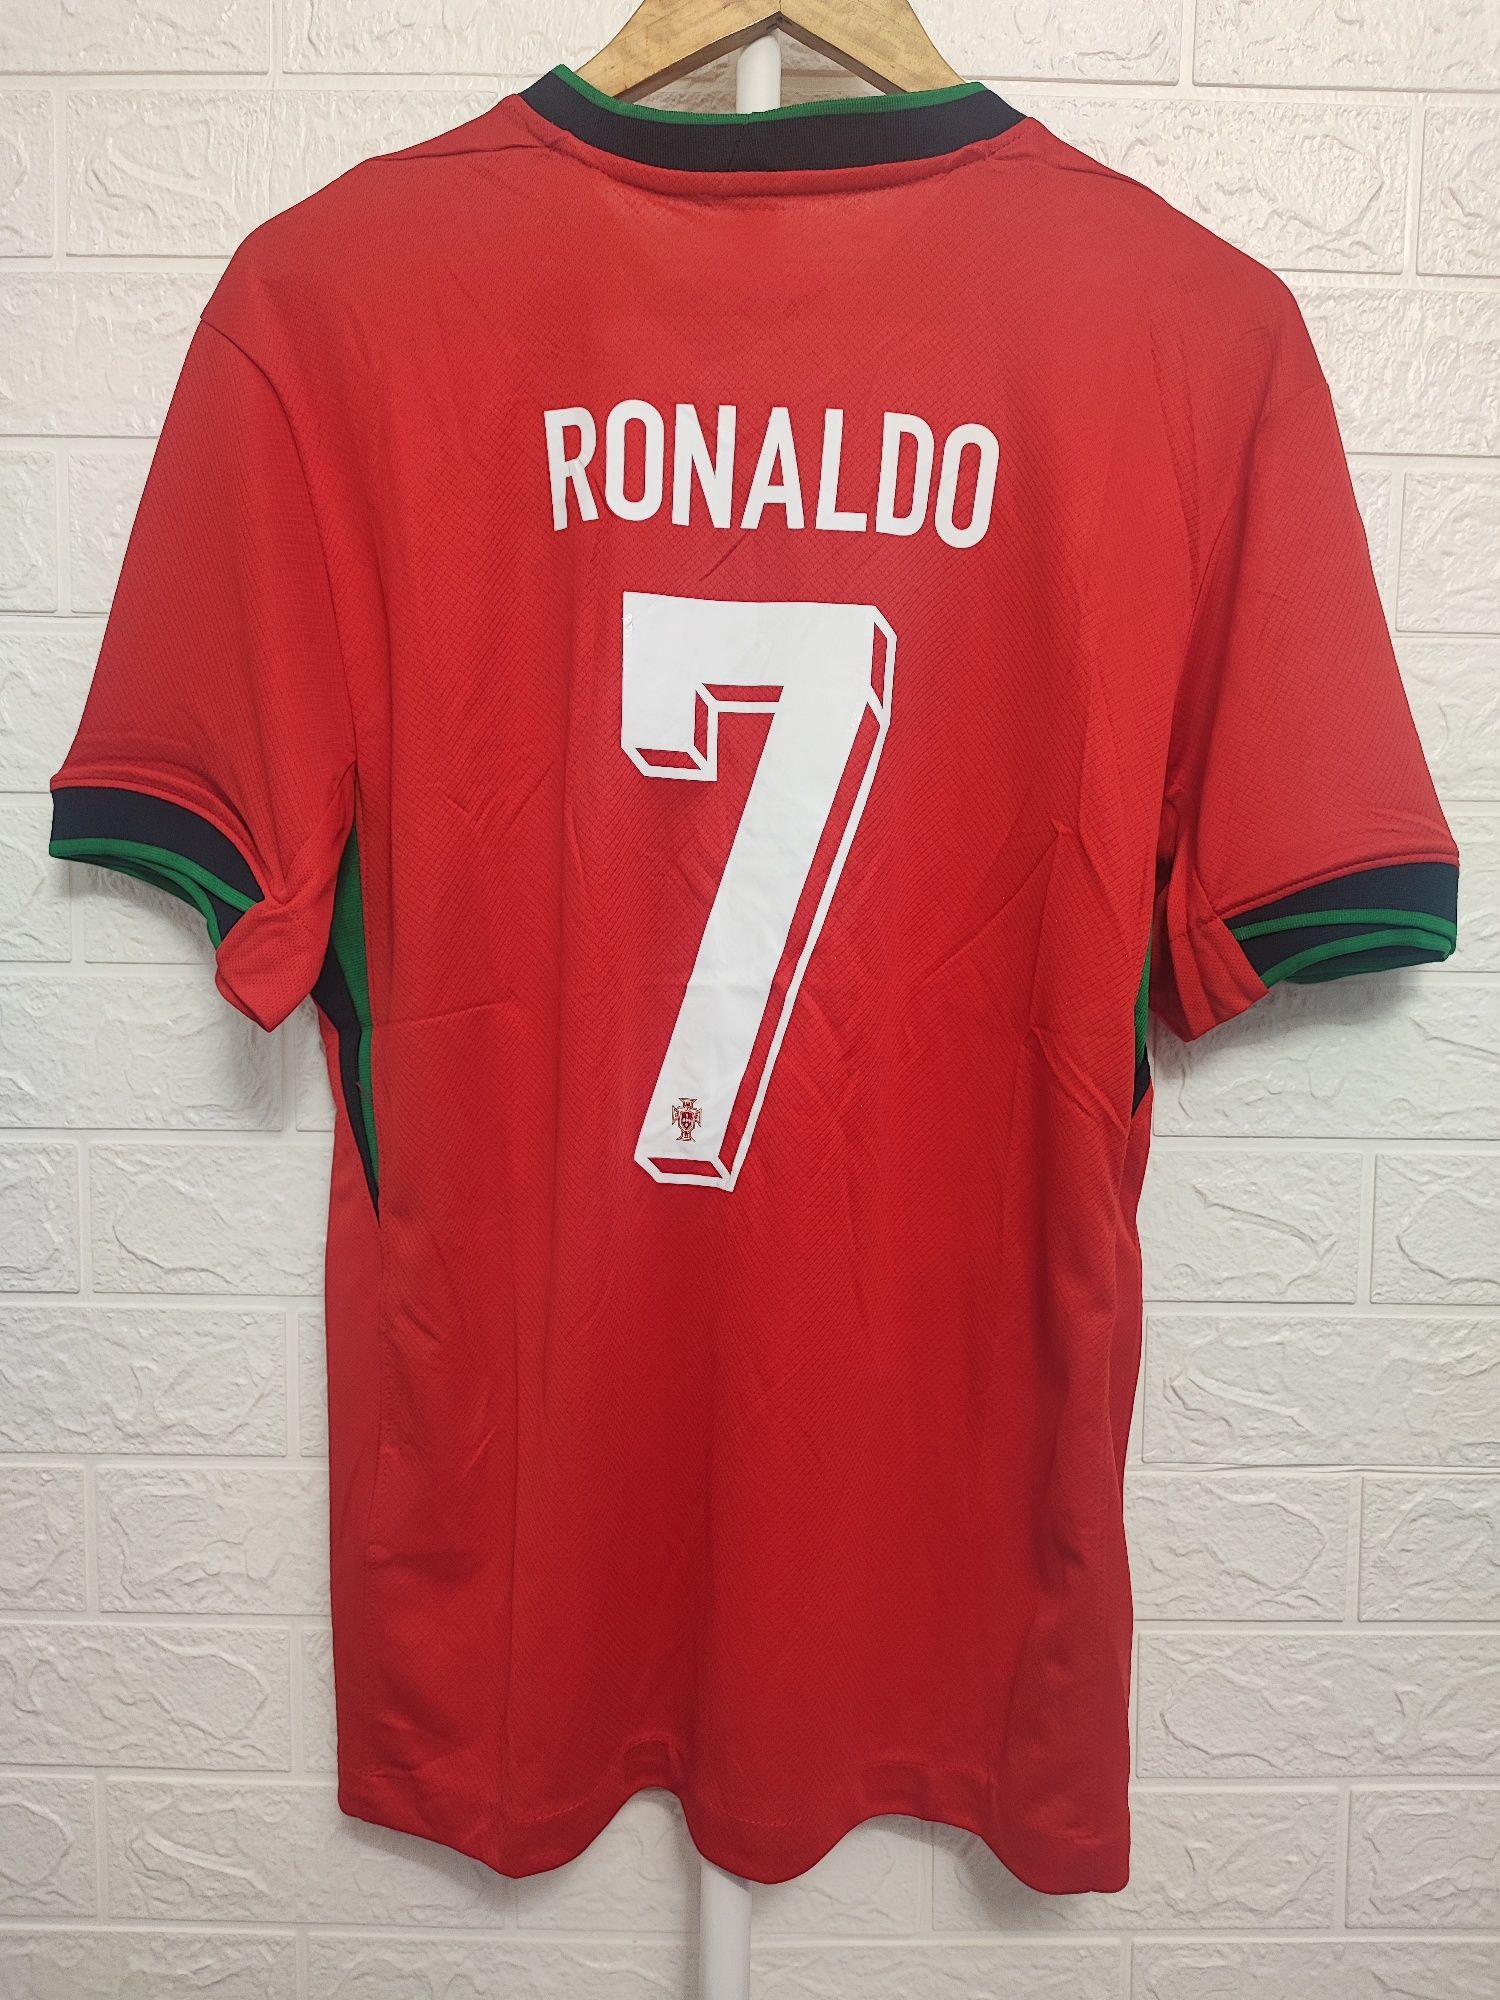 Camisolas Portugal Ronaldo